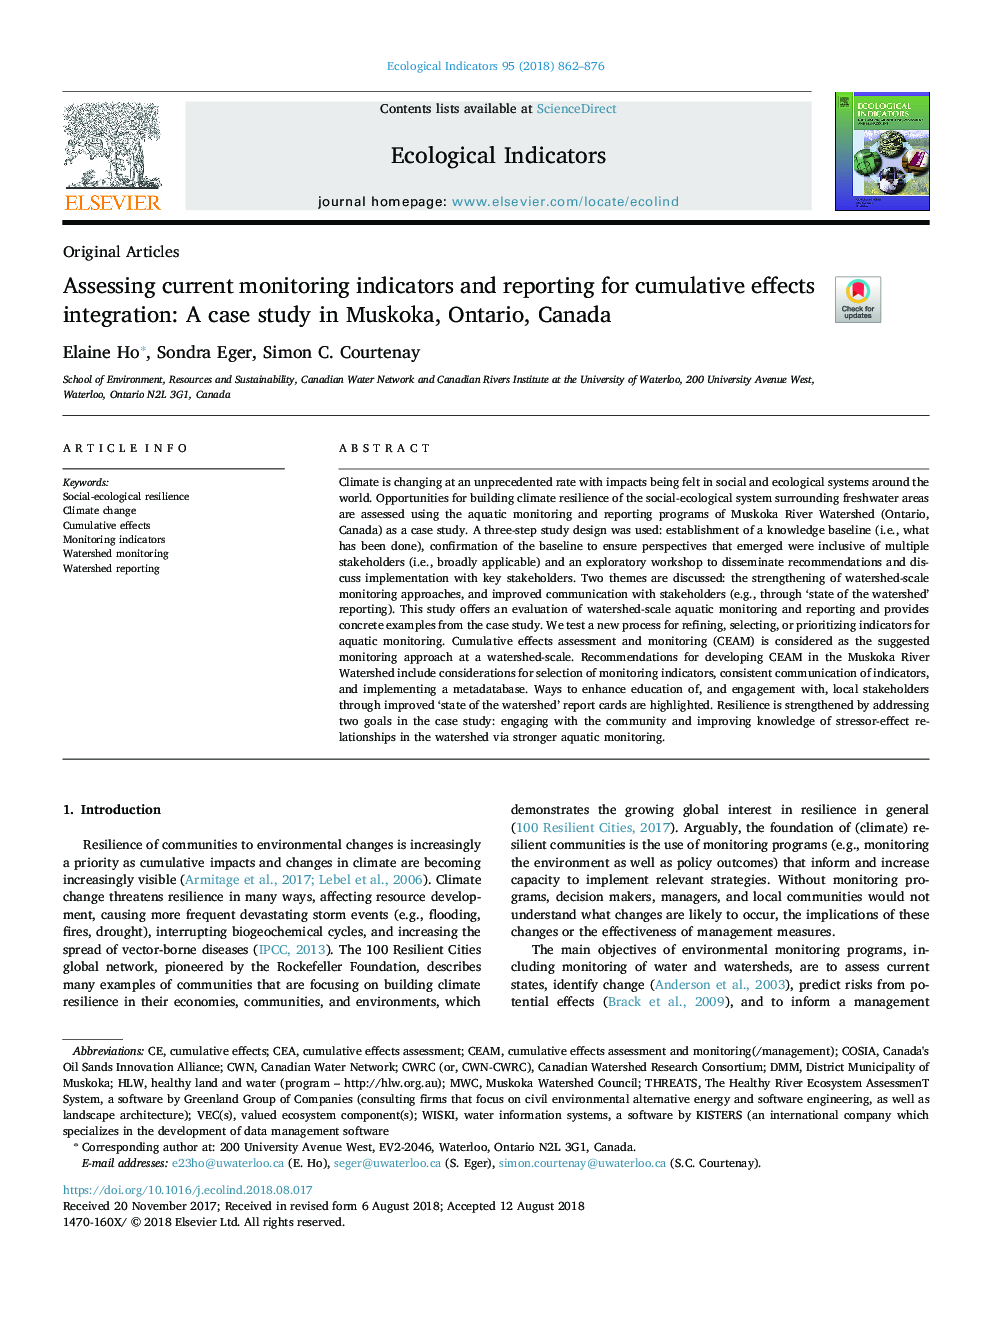 ارزیابی شاخص های کنونی نظارت و گزارش گیری برای ادغام اثرات تجمعی: مطالعه موردی در مسکوکا، انتاریو، کانادا 